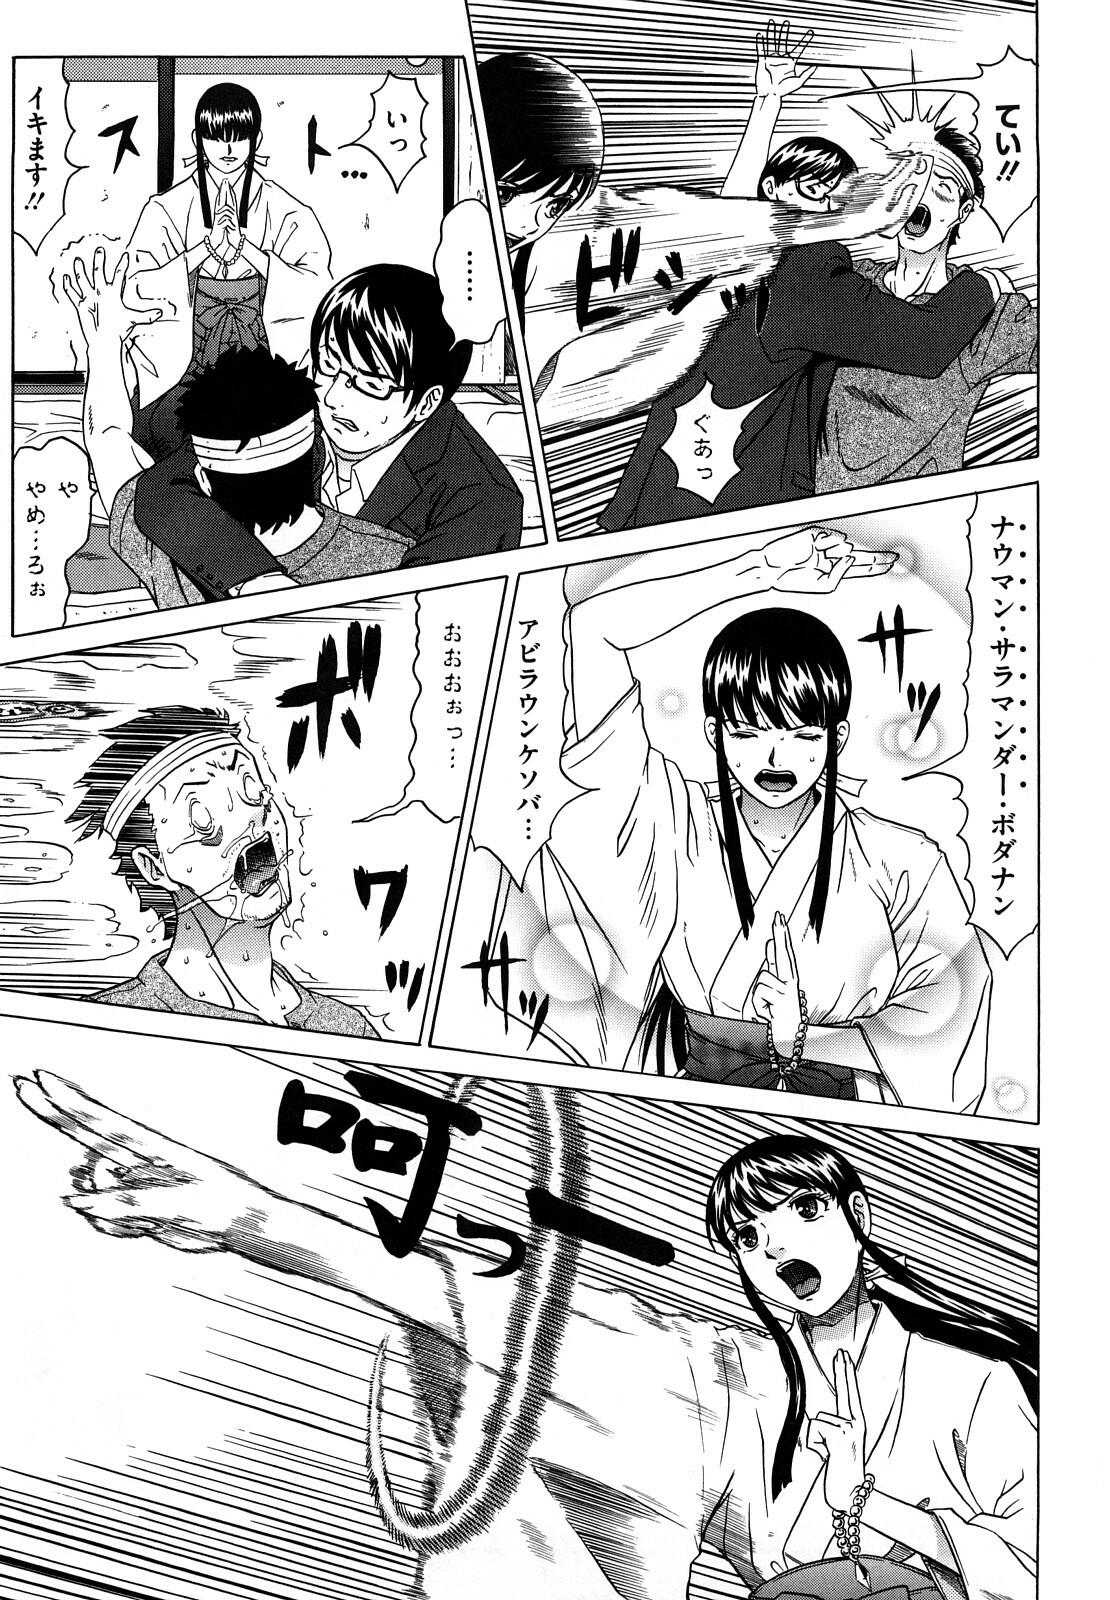 [Kurono Masakado] Nocturnal page 12 full